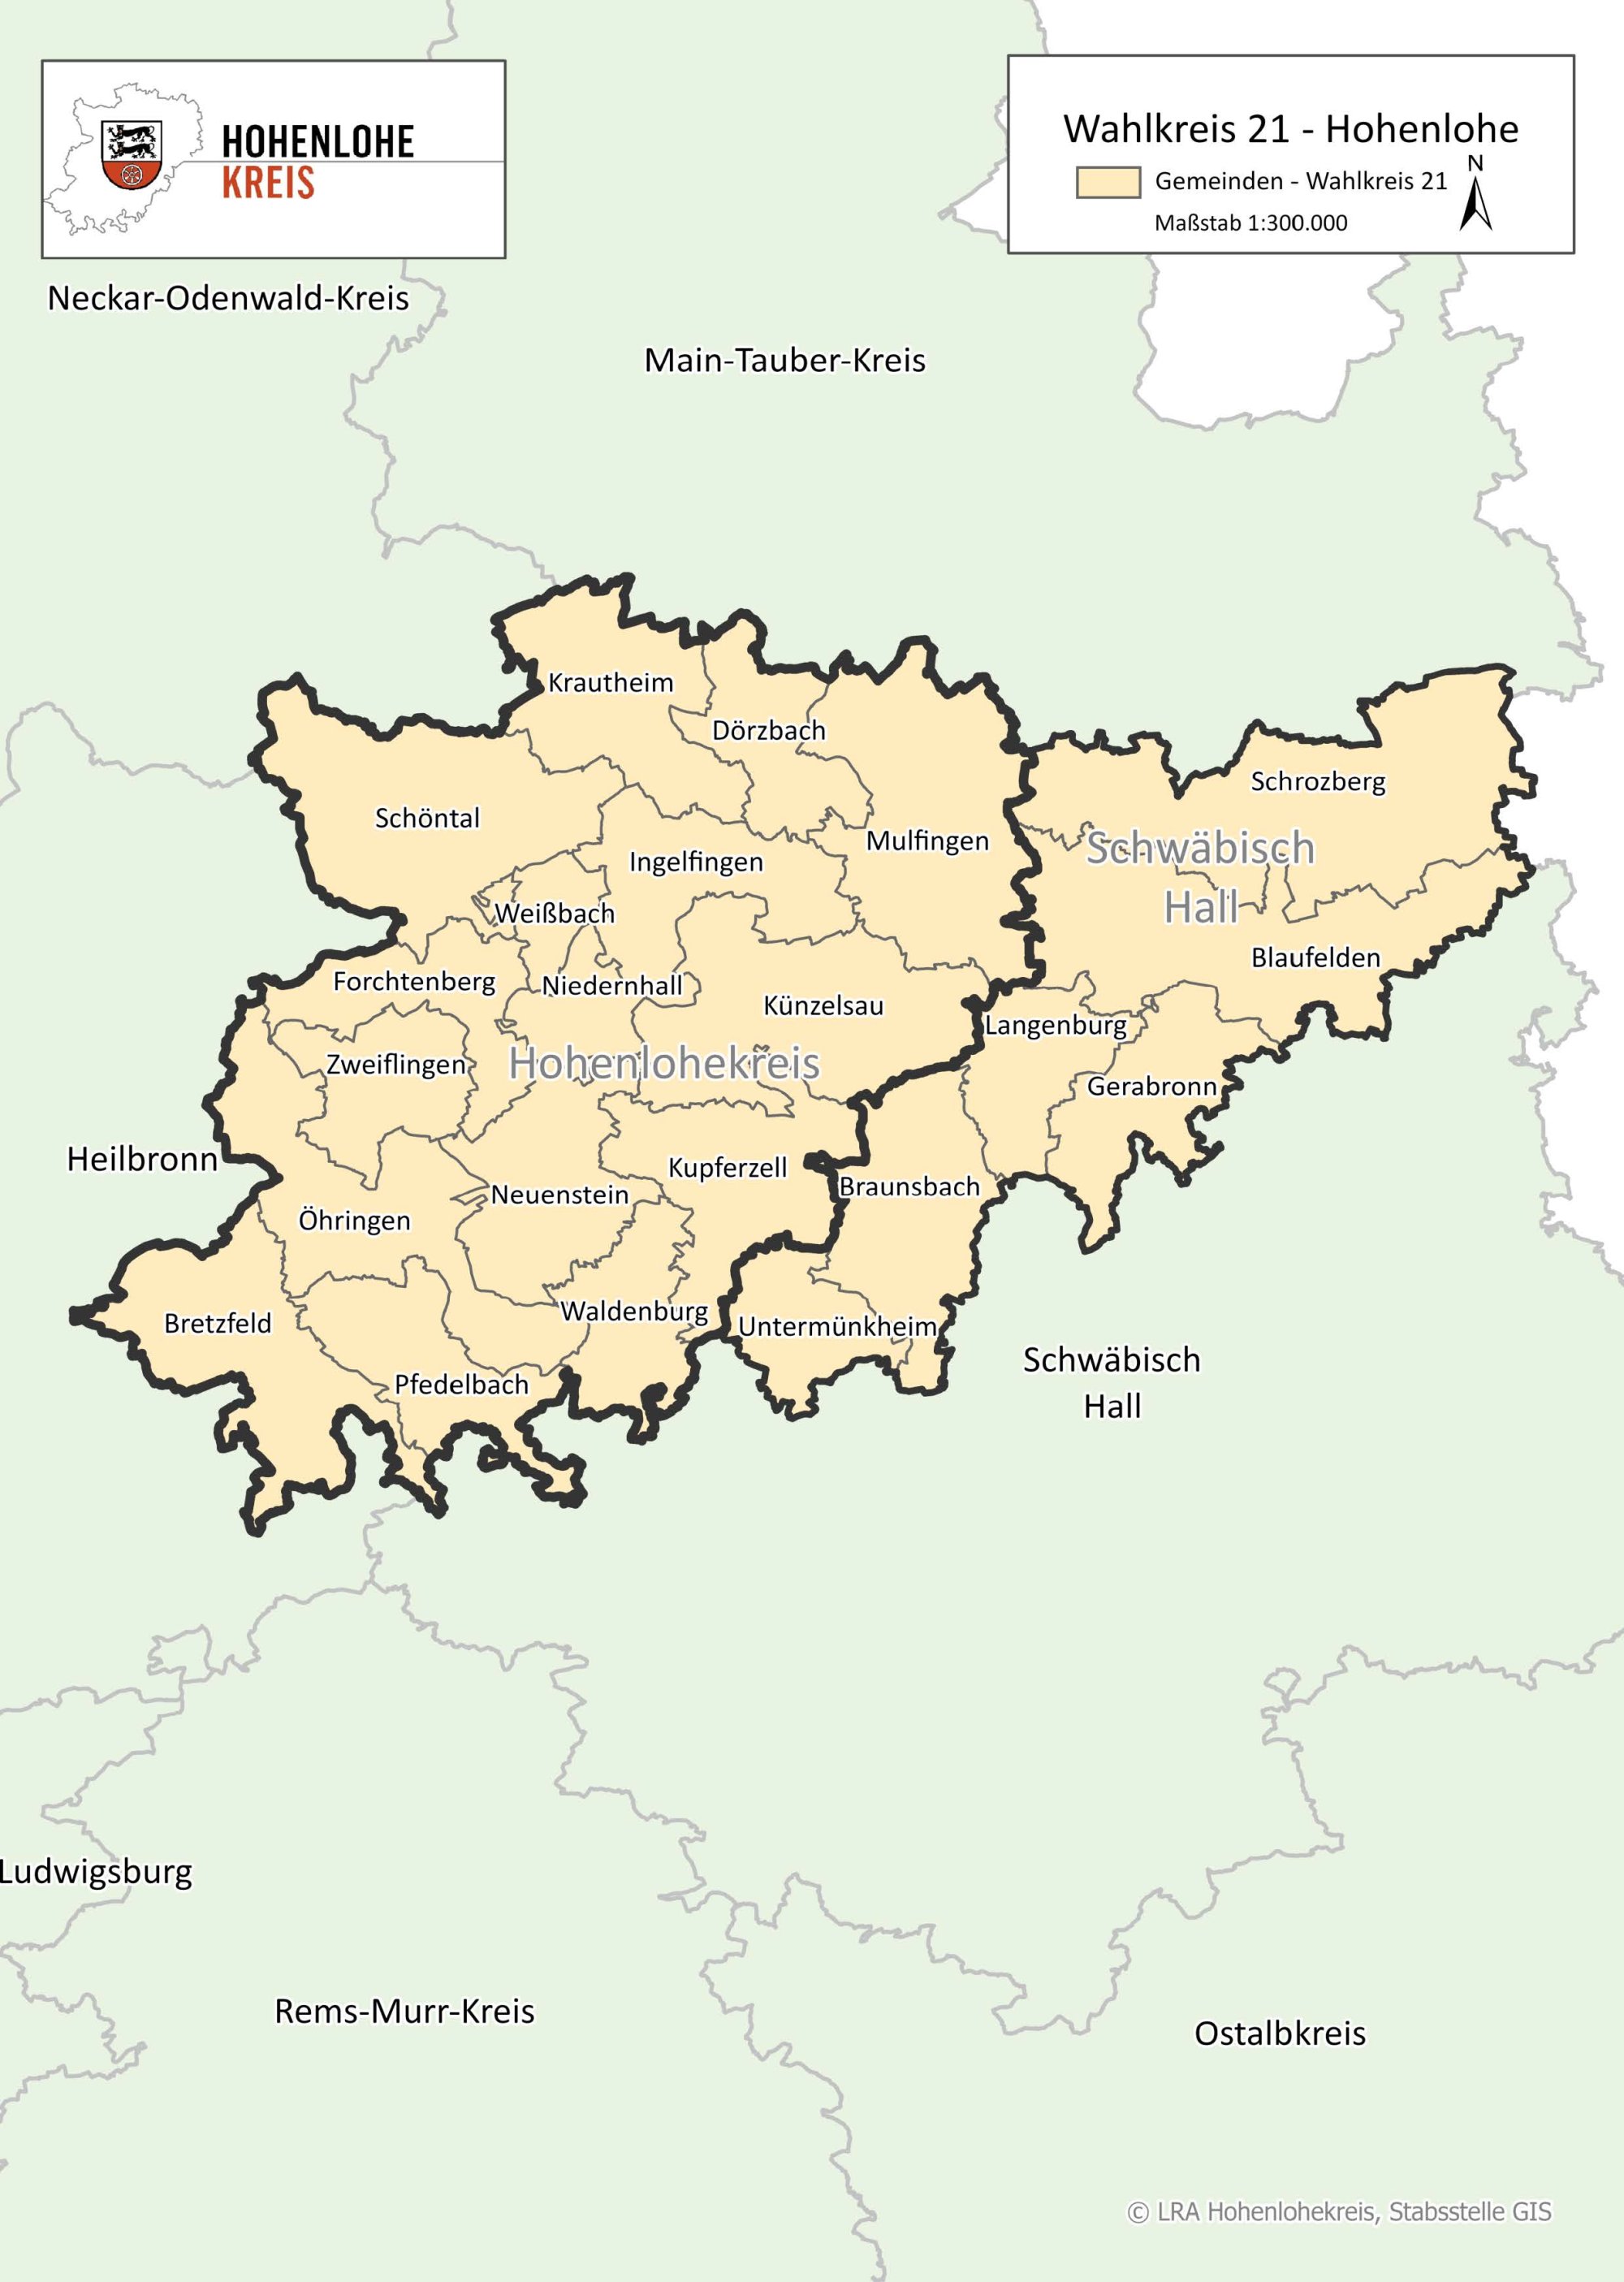 Landkarte mit der Einteilung der Wahlkreise für die Landtagswahl